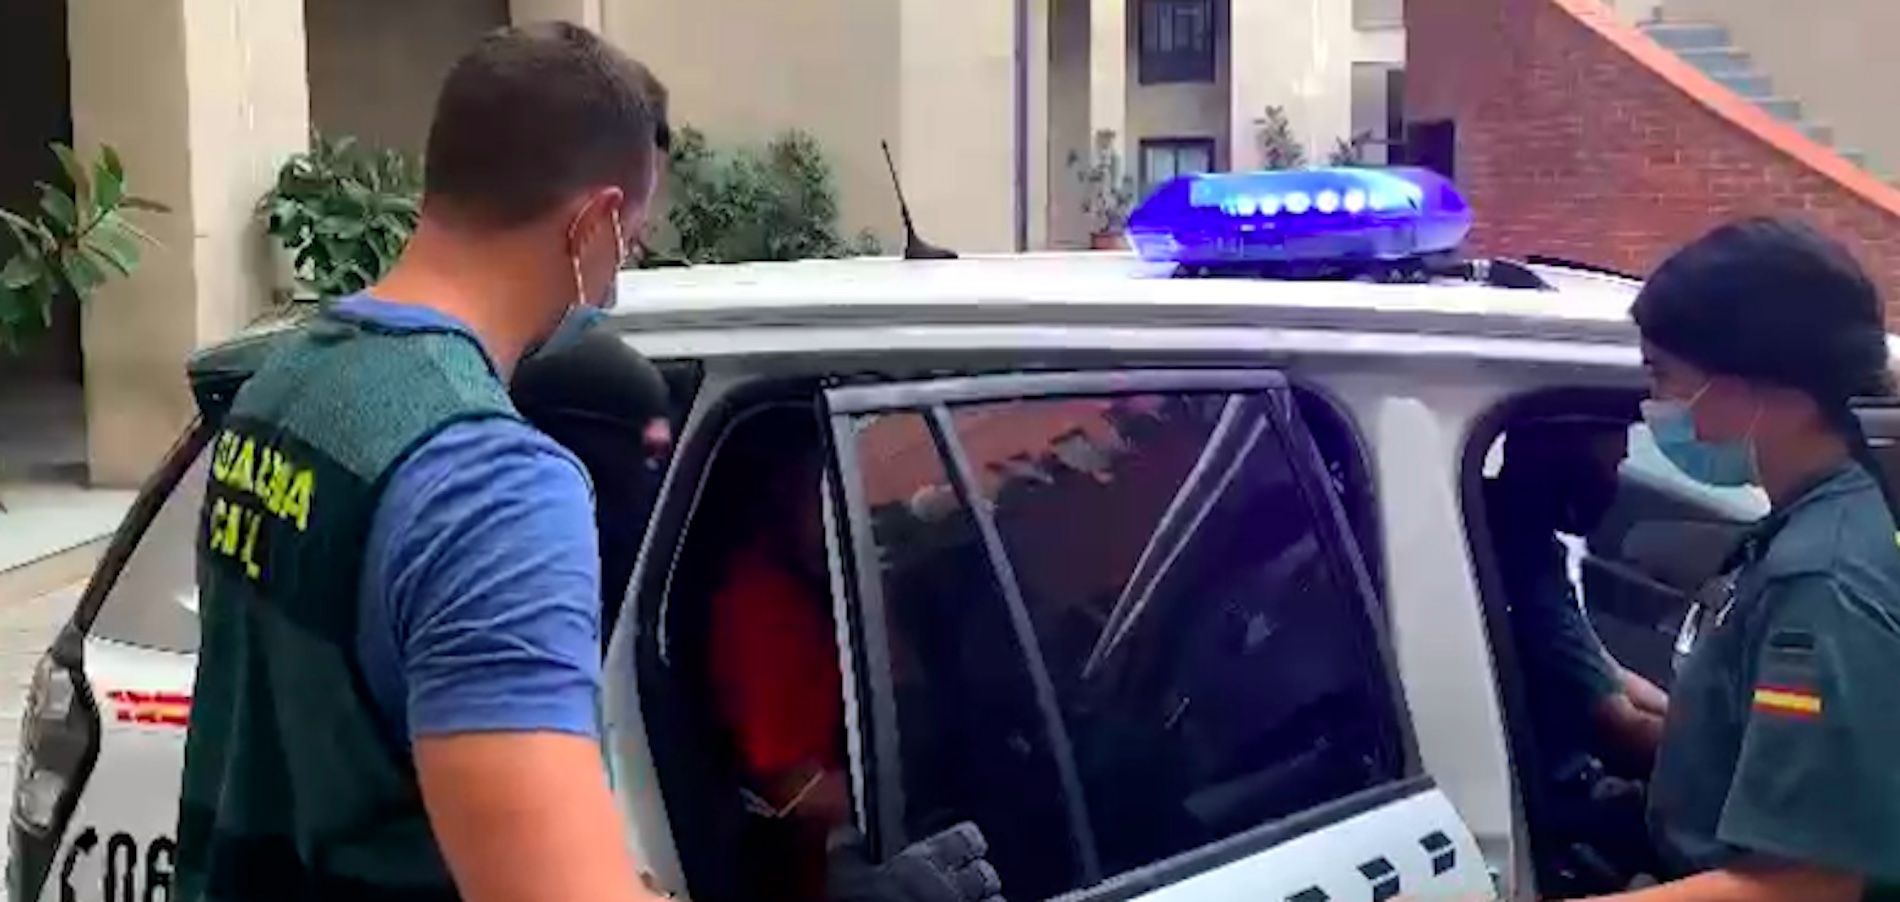 Detención / Guardia Civil